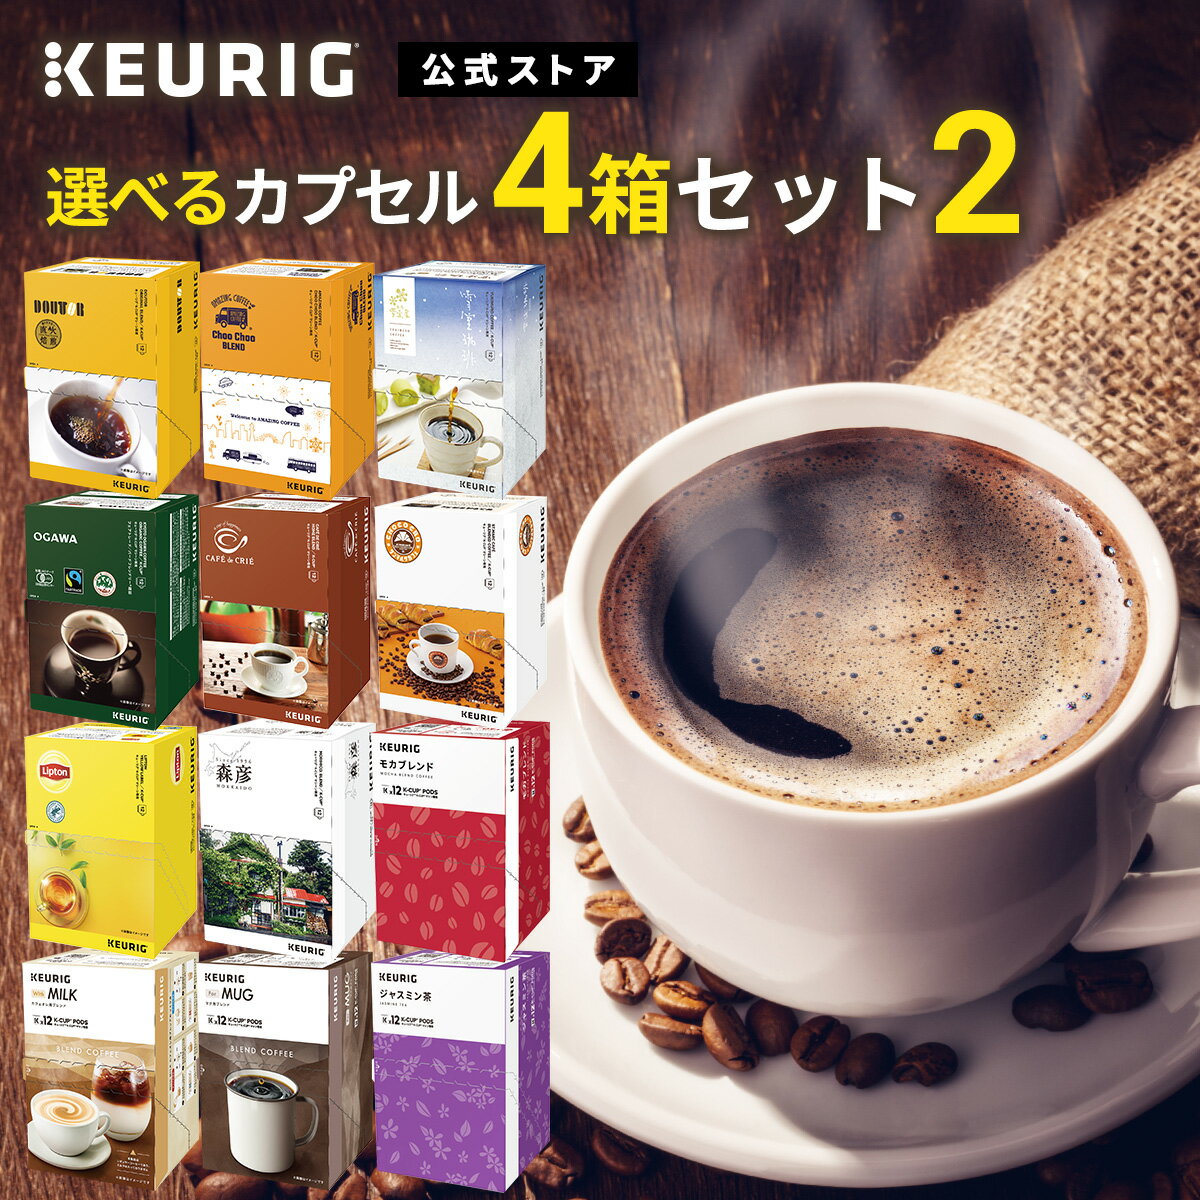 【公式】KEURIG 全12種類から「選べるカプセル4箱セット2」 48杯分 | K-Cup kcup Kカップ カプセル キューリグ コー…